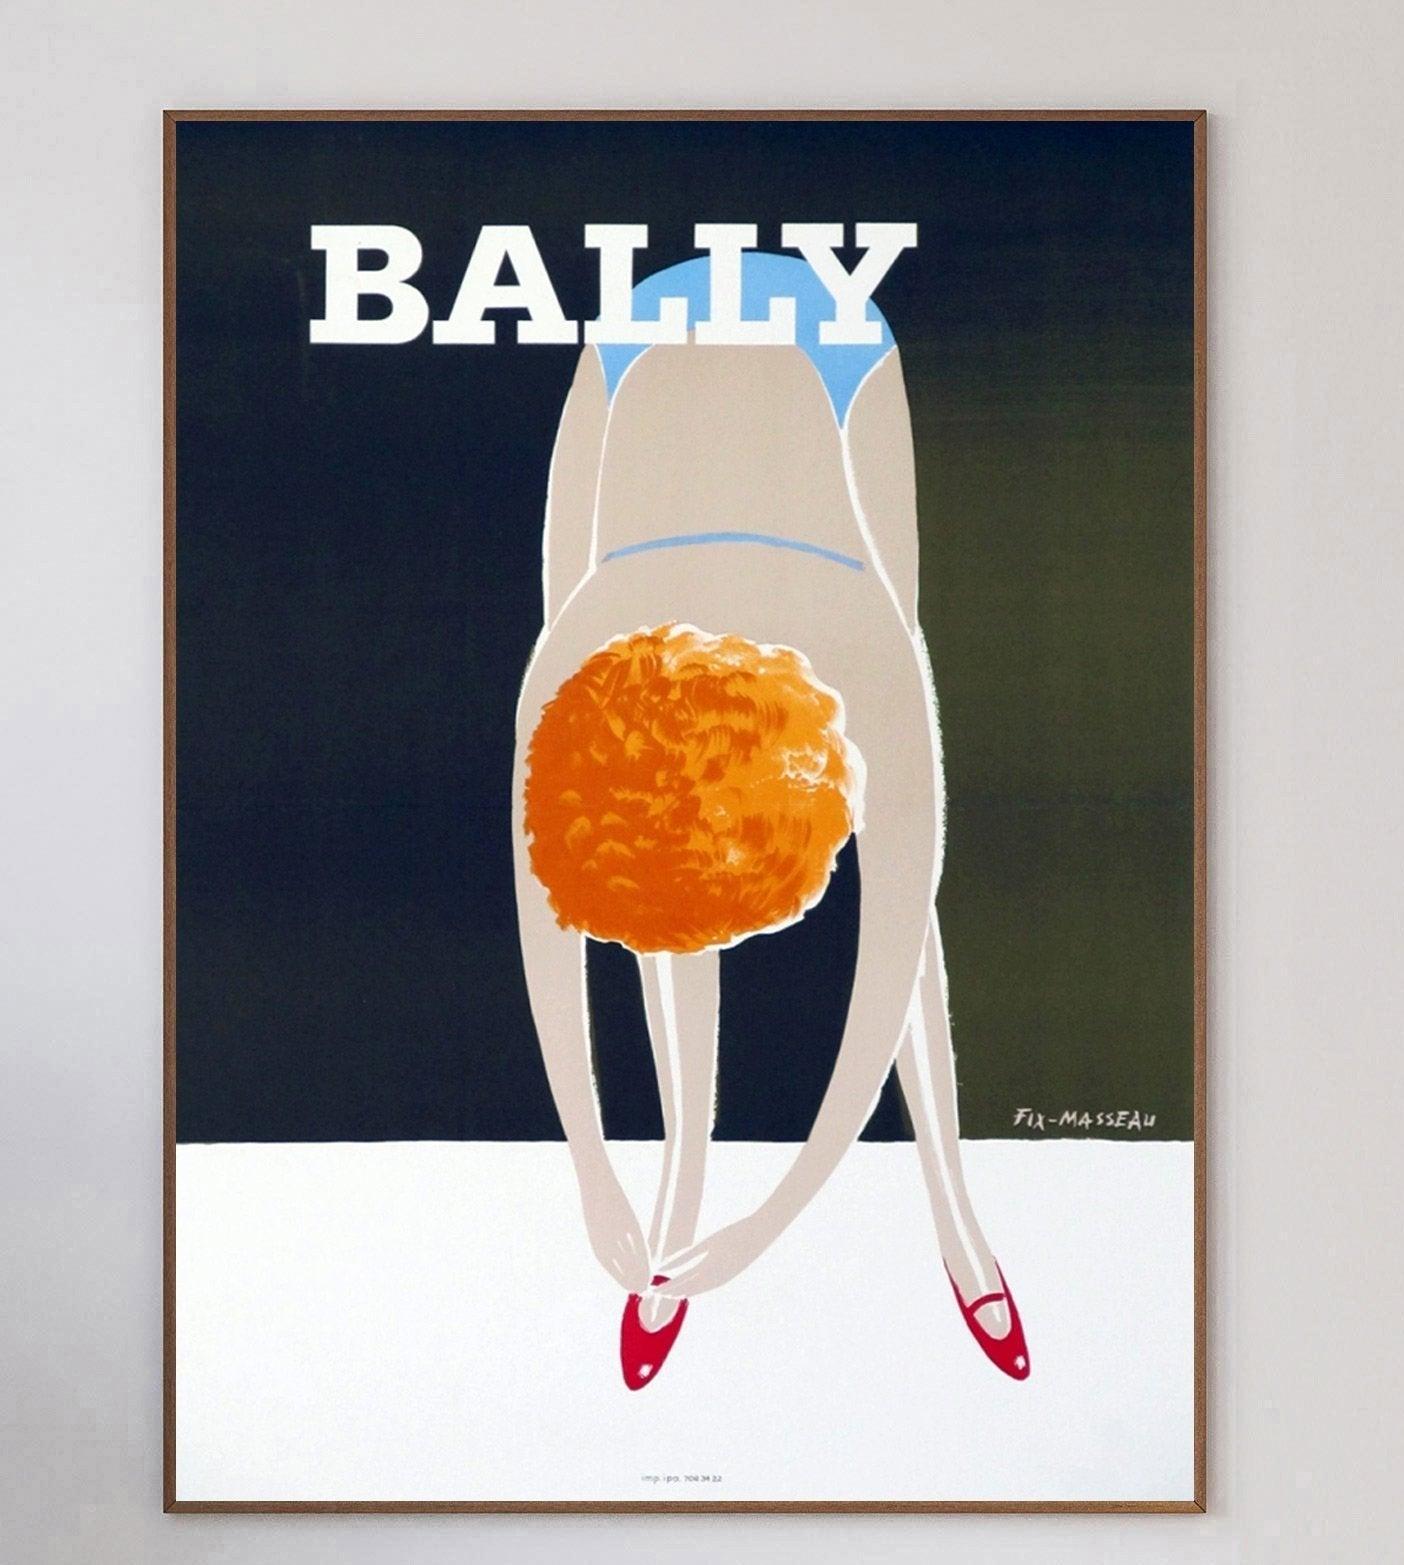 Cartel de 1980 bellamente diseñado para anunciar la marca suiza de calzado de lujo Bally. Con ilustraciones del diseñador gráfico y cartelista francés Fix-Masseau, conocido por sus colaboraciones con el Simplon Orient-Express de Venecia.

Esta pieza